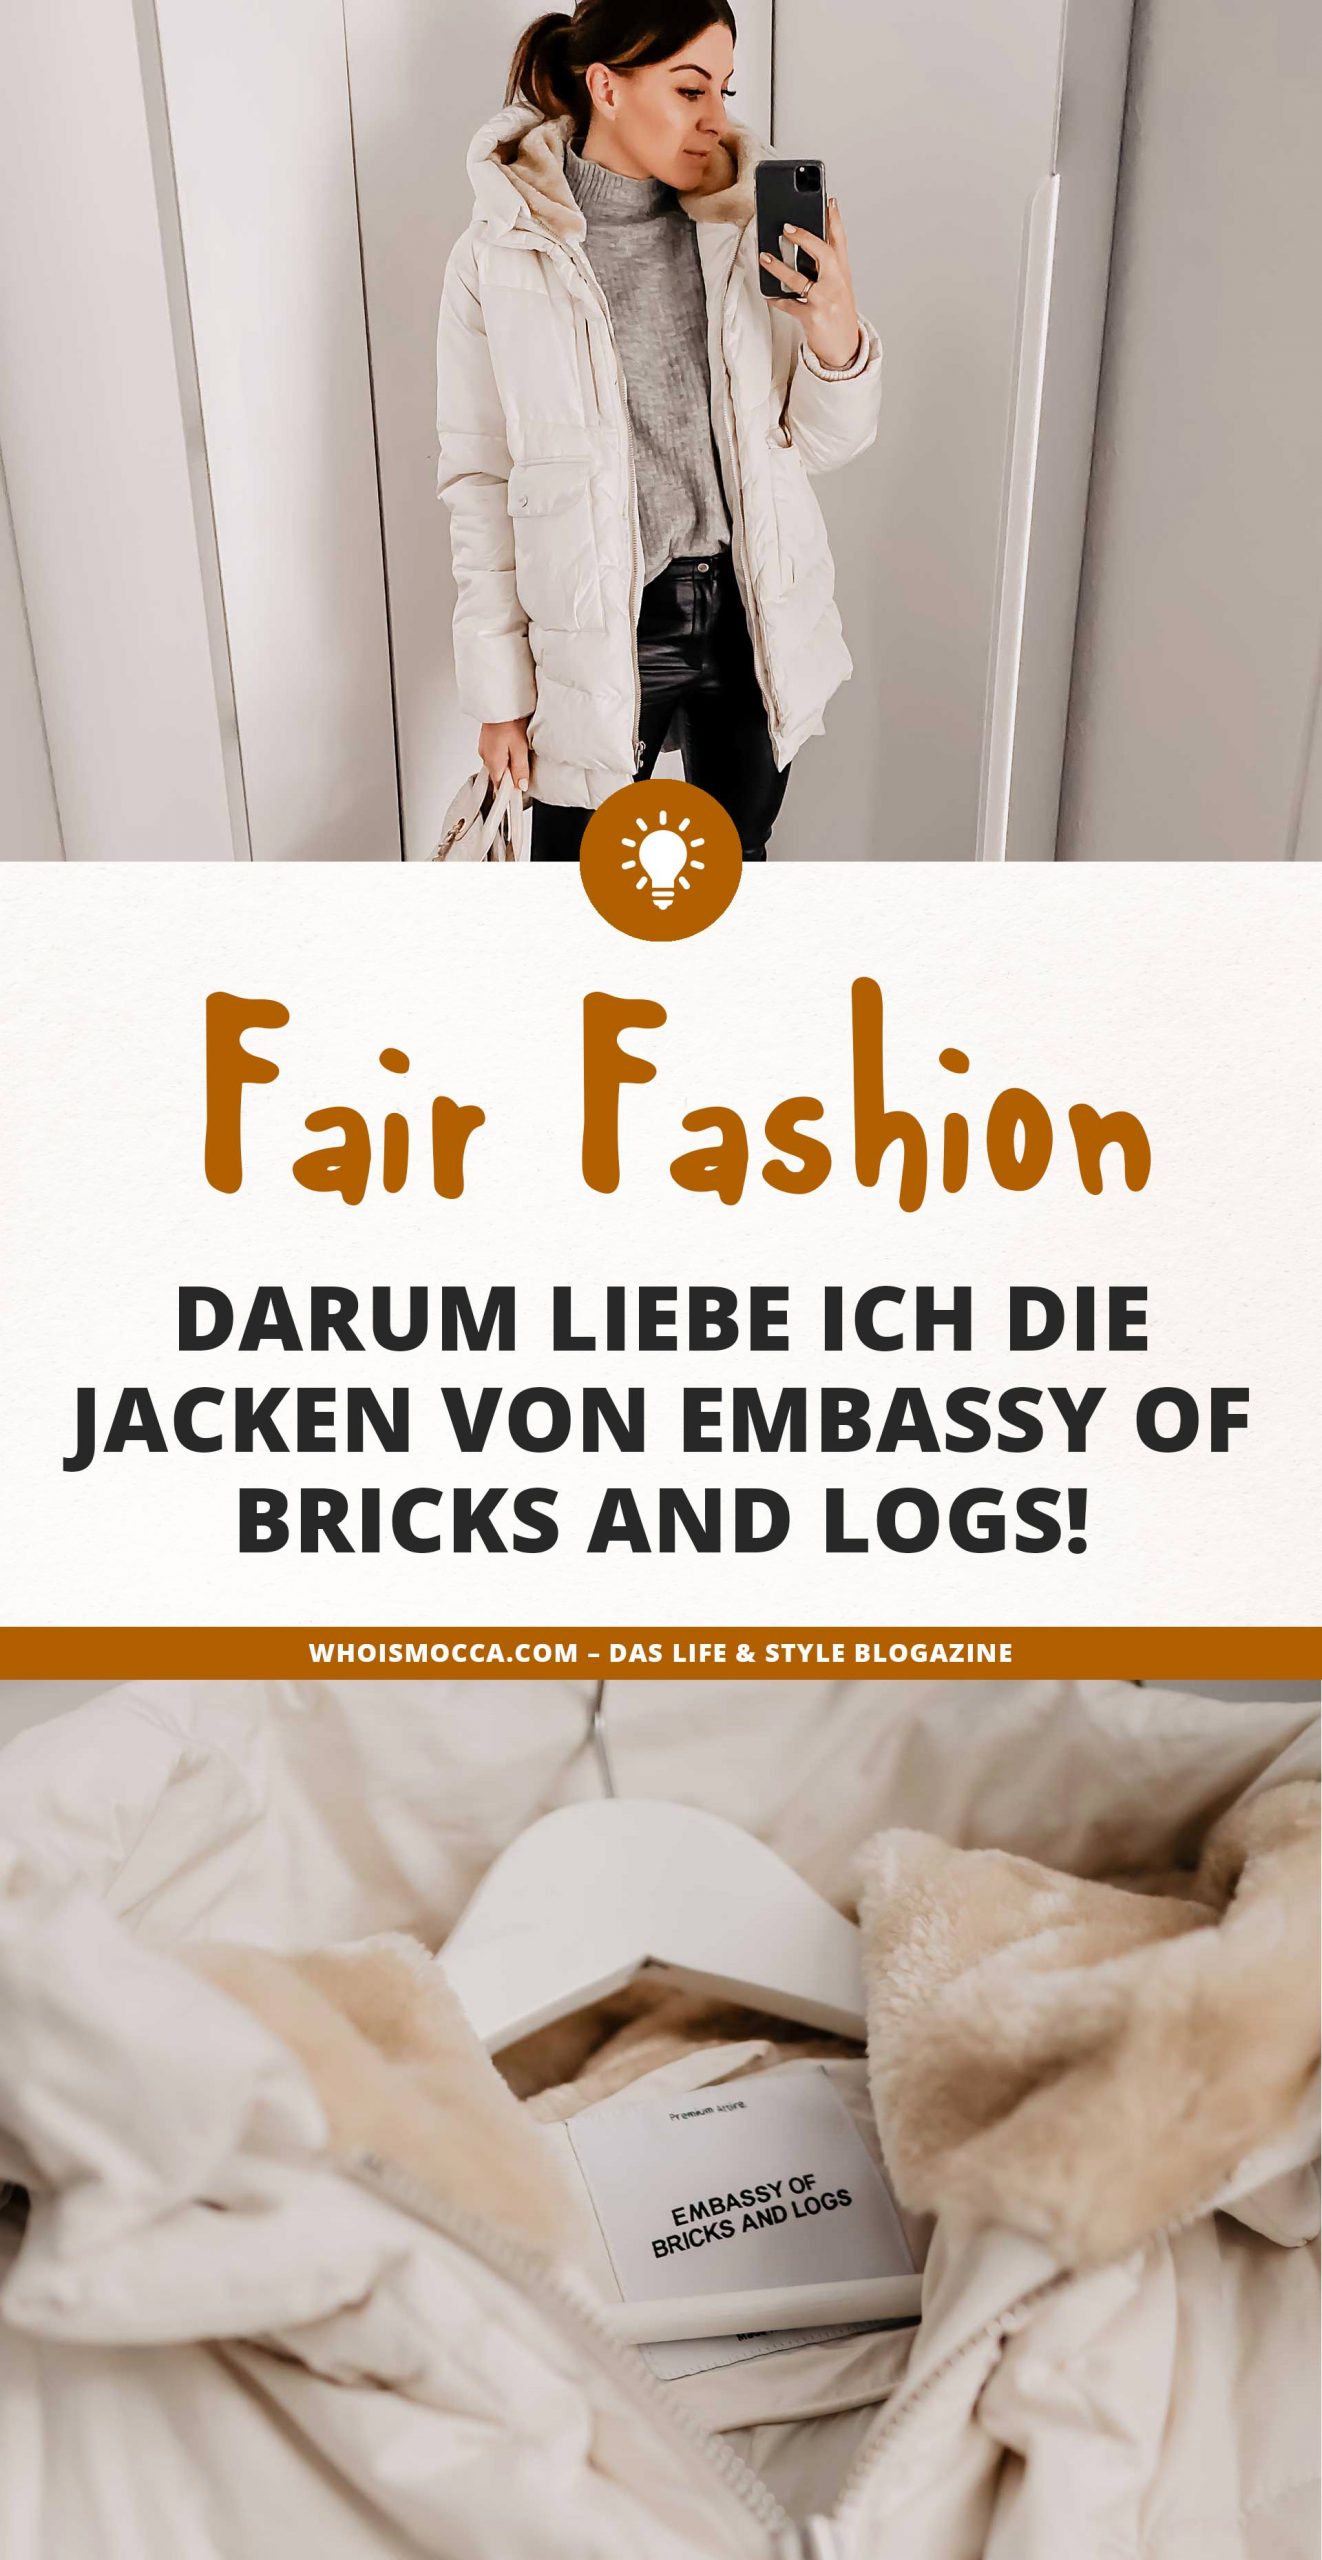 Auf dem Modeblog dreht sich heute alles um die vegane Fair Fashion Marke Embassy of Bricks and Logs. Wo du die Outerwear online kaufen kannst und warum ich die nachhaltige Modemarke so liebe, erzähle ich dir auf whoismocca.com #nachhaltigkeit #fairfashion #veganemode #fairemode #embassyofbricksandlogs